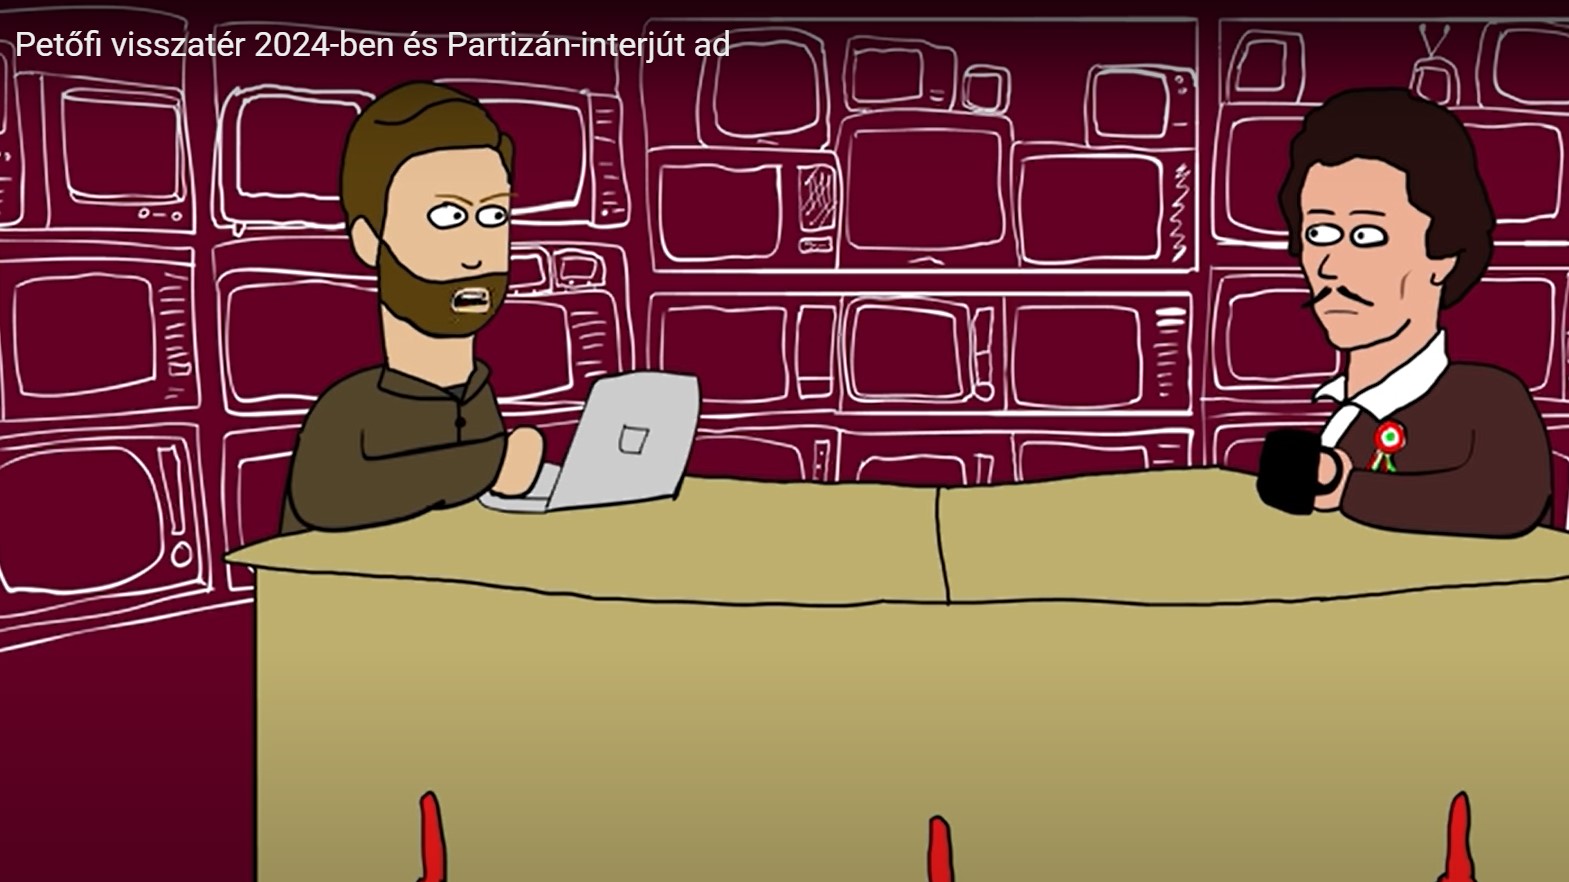 Vírusként terjed az animációs film, amelyben Petőfi Sándor visszatér és megmondja a magáét Orbán Viktorról